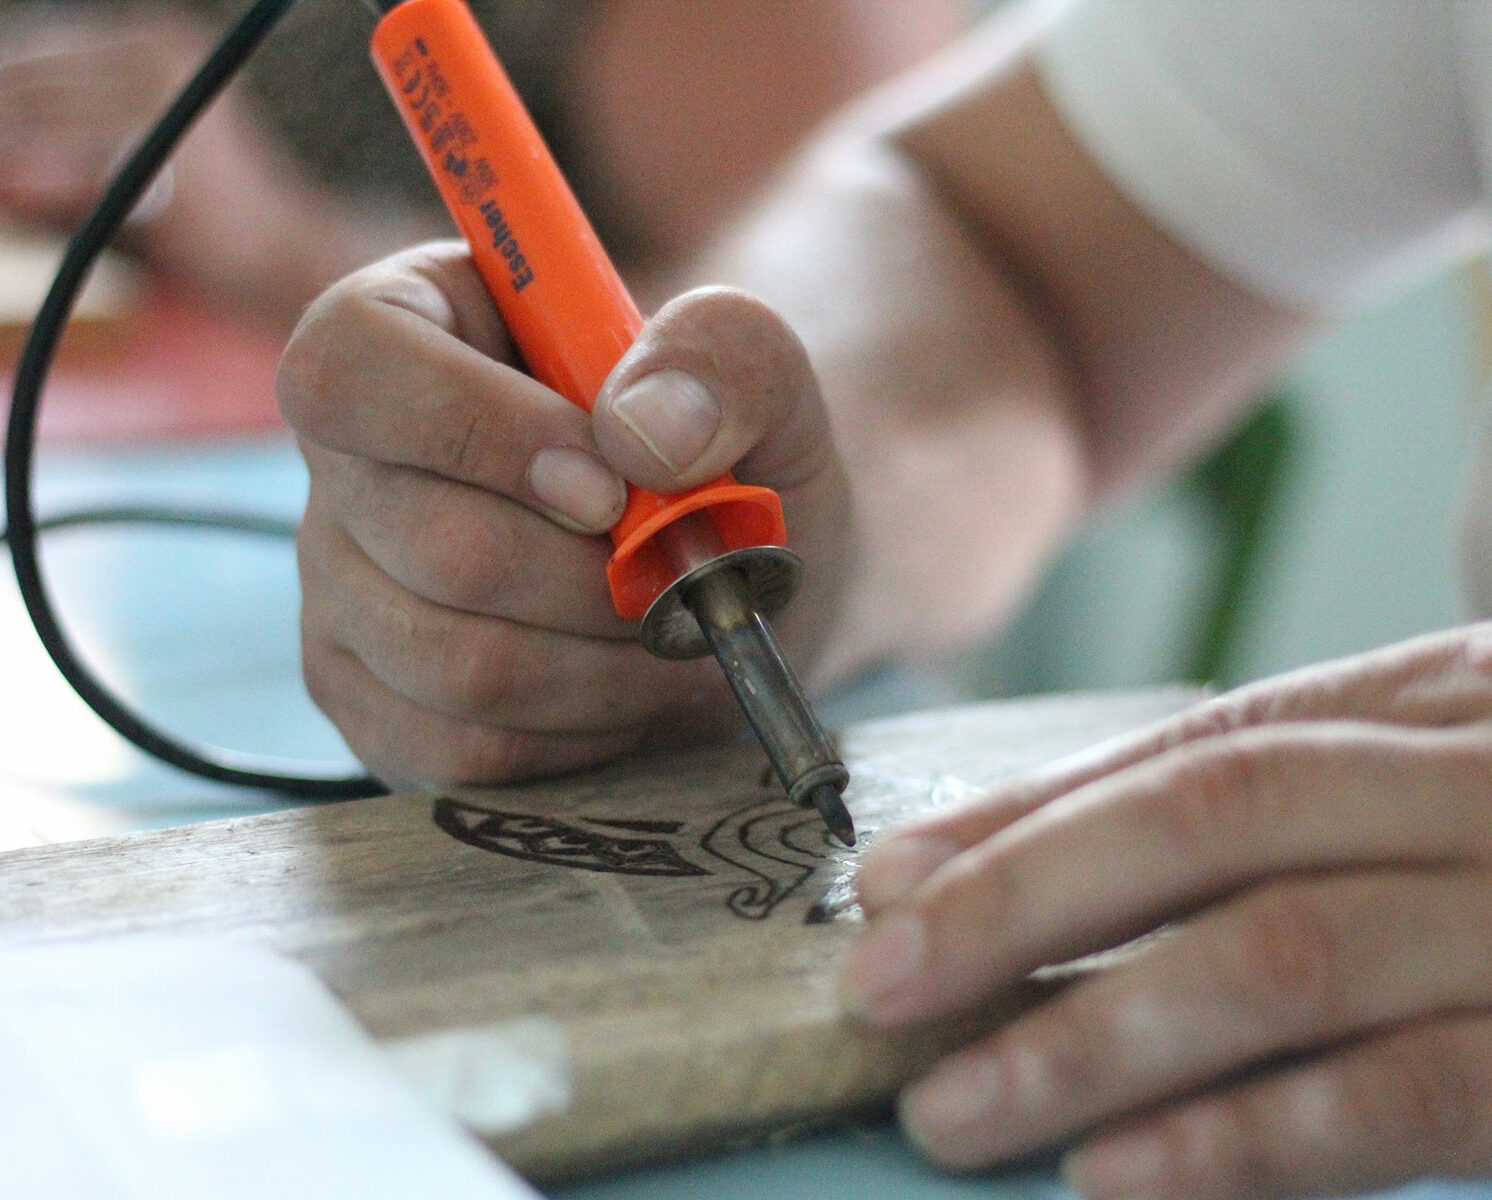 Izlab MakerSpace a Torino ospita il corso di Ettore Fassino di WAP We Are Pyrographers, dedicato all'arte della pirografia.
Durante il corso i partecipanti conosceranno gli strumenti e tecniche per incidere e il legno con il calore.
Dopo la teoria e l'esercitazione pratica, il motivo decorativo scelto sarà riportato sul proprio oggetto.